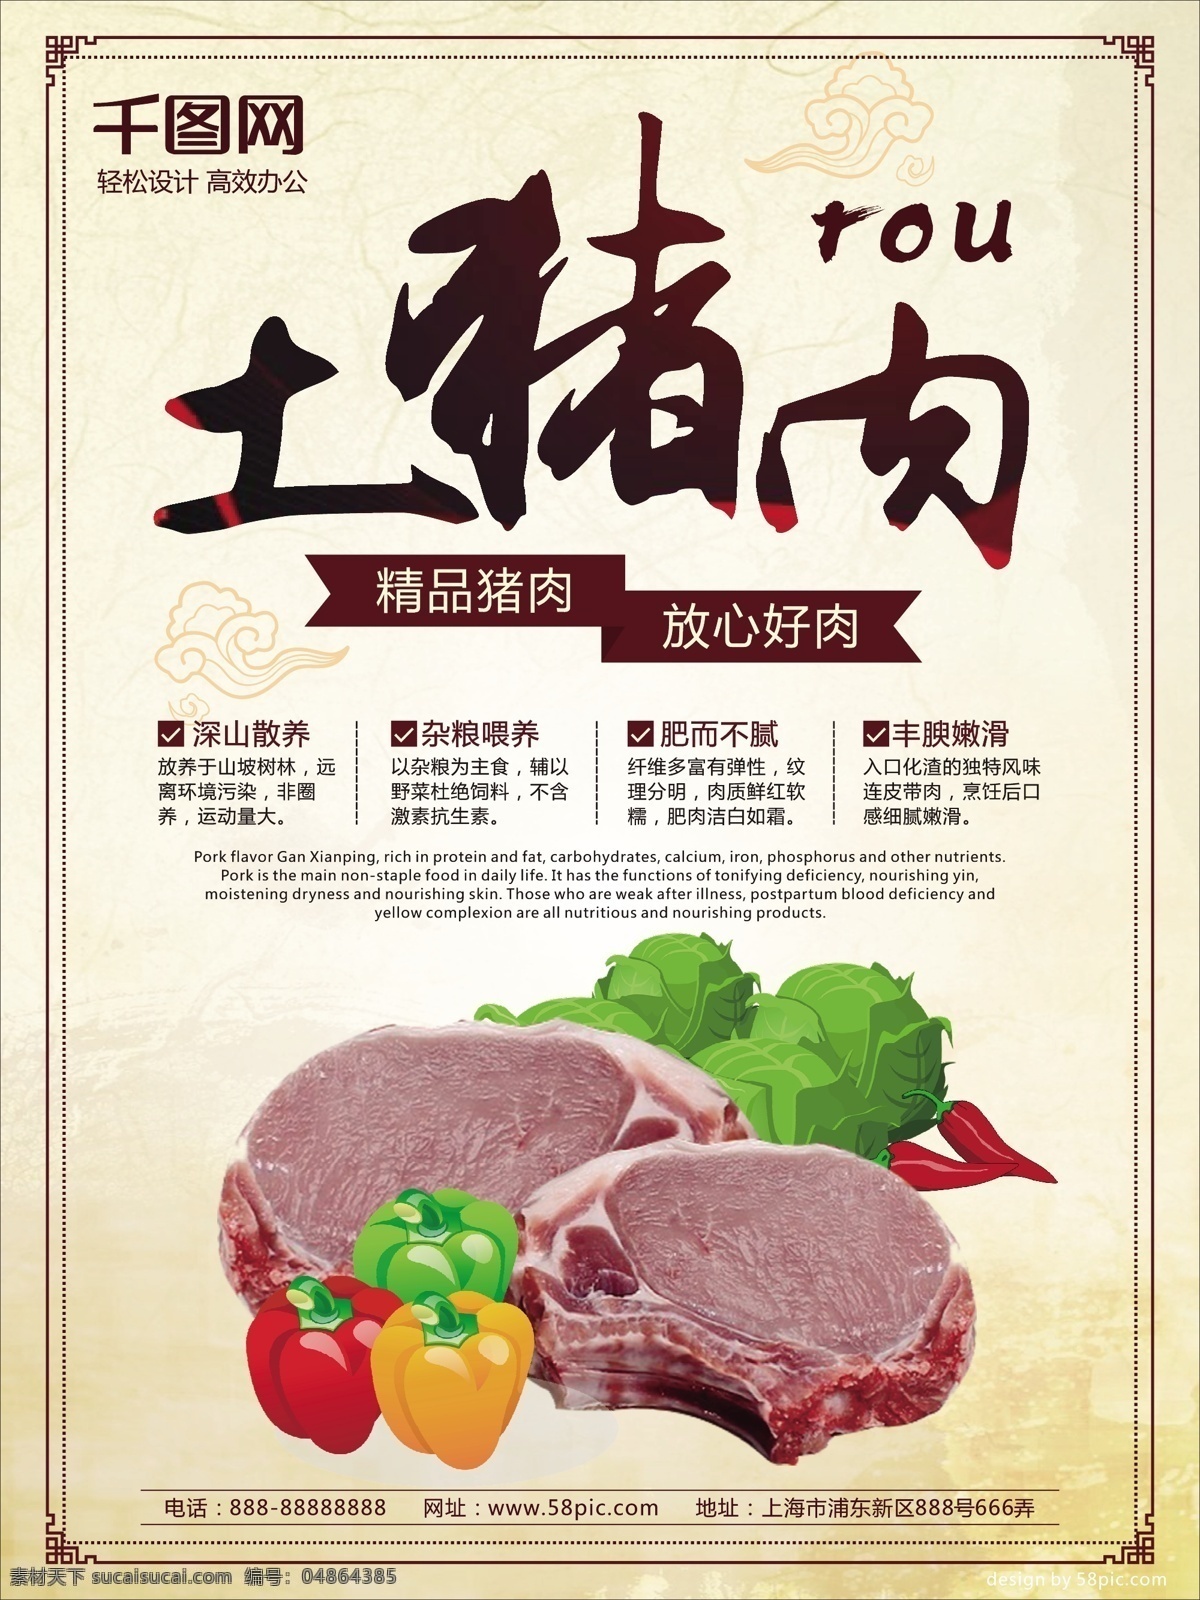 土 猪肉 超市 生鲜 打折 促销 海报 土猪肉 超市生鲜 打折促销海报 蔬菜